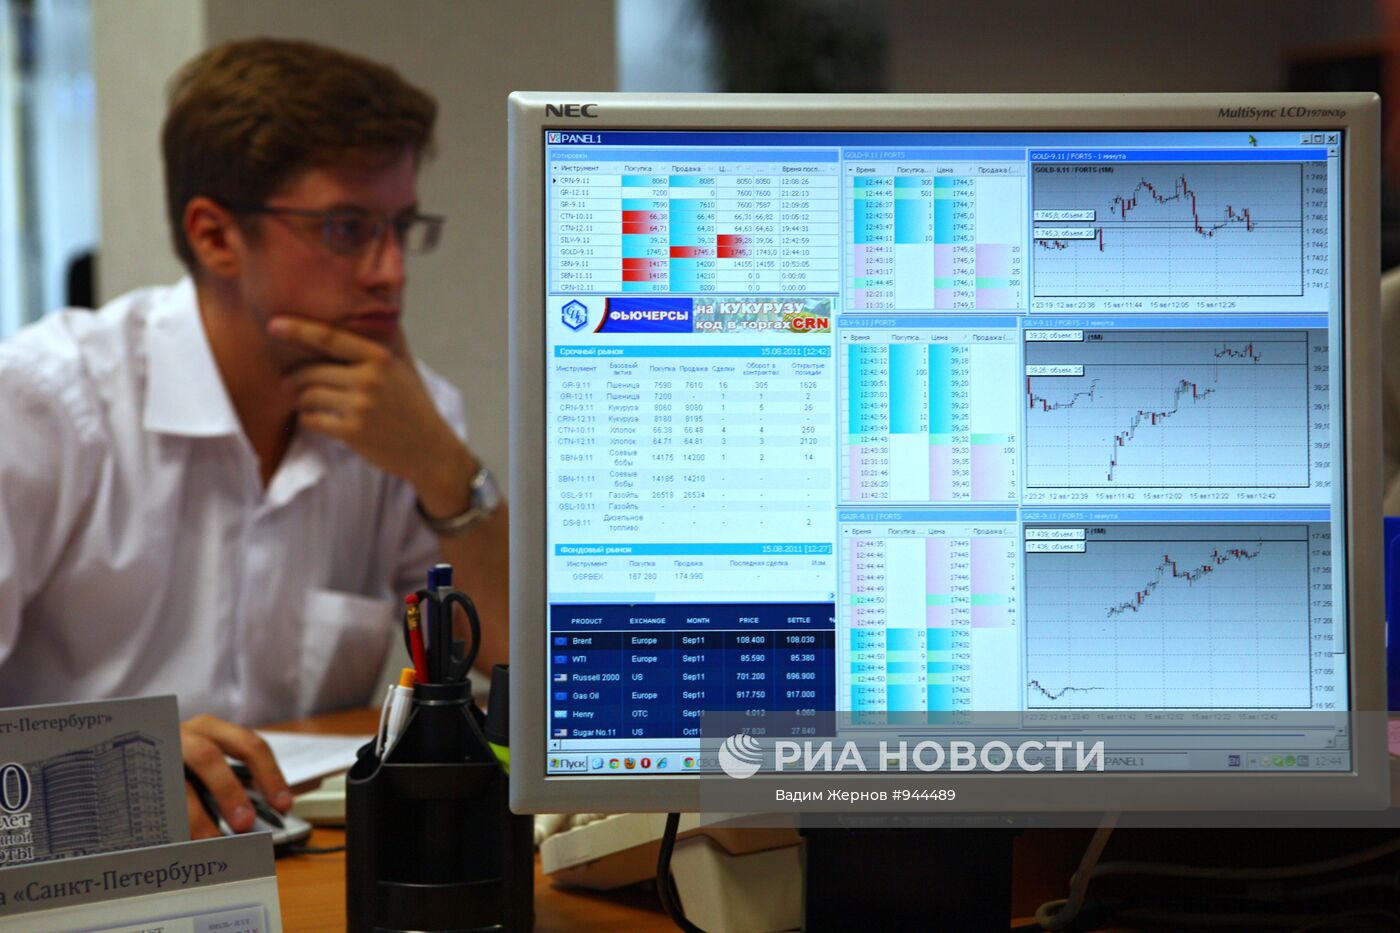 Работа товарно-фондовой биржи "Санкт-Петербург"